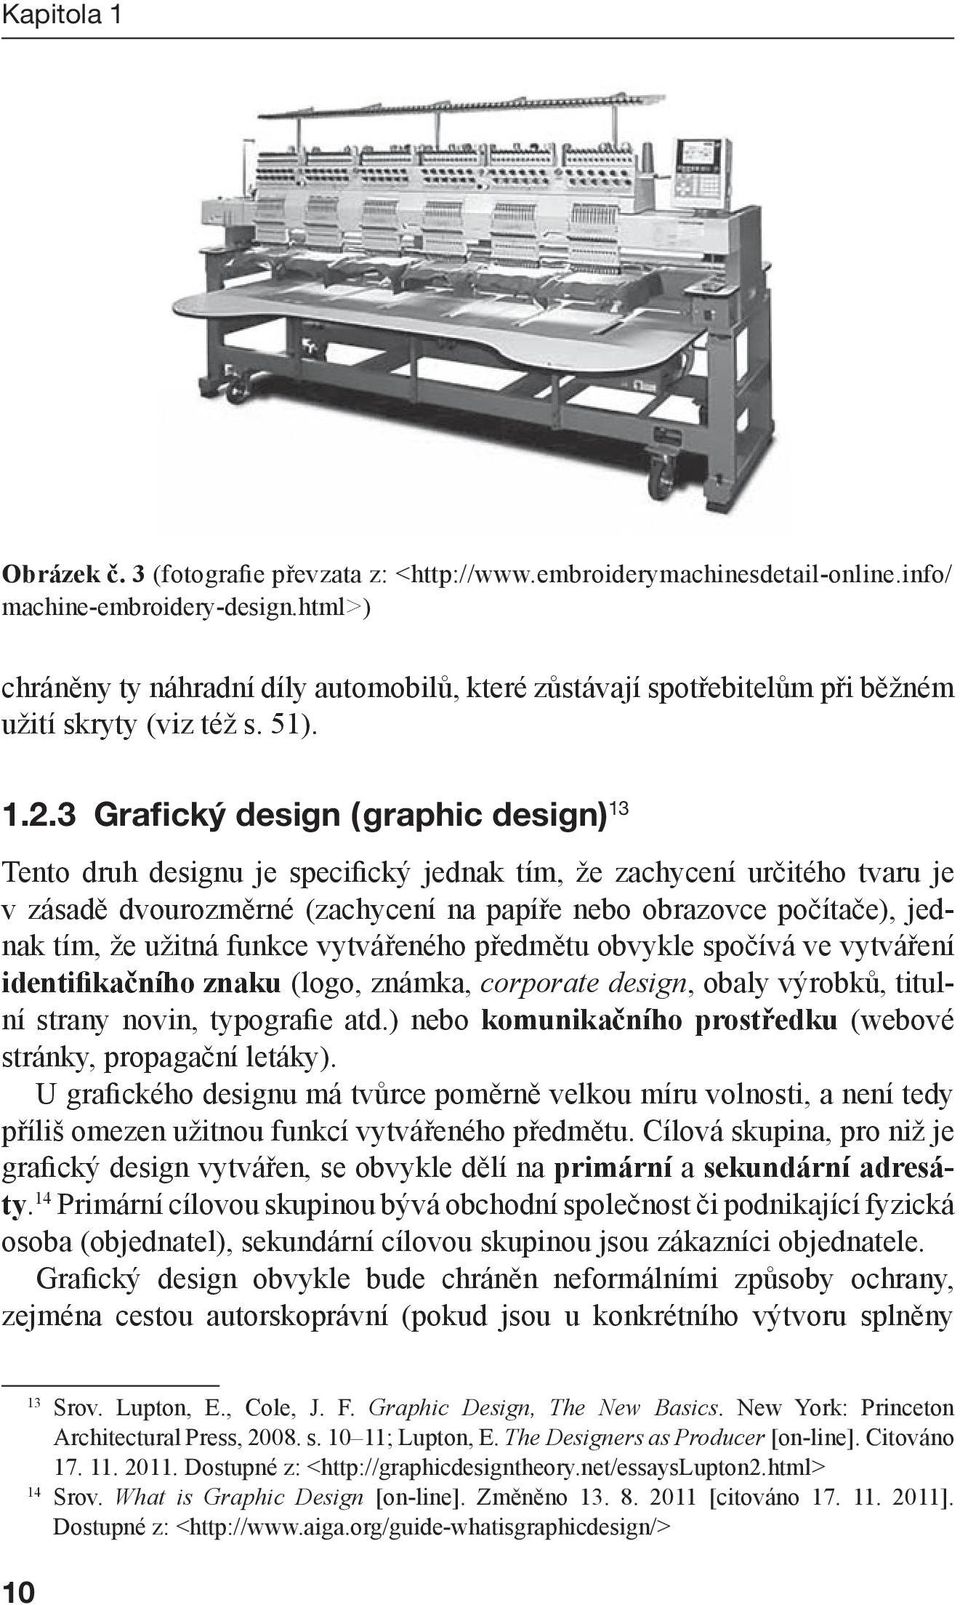 3 Grafický design (graphic design) 13 Tento druh designu je specifický jednak tím, že zachycení určitého tvaru je v zásadě dvourozměrné (zachycení na papíře nebo obrazovce počítače), jednak tím, že